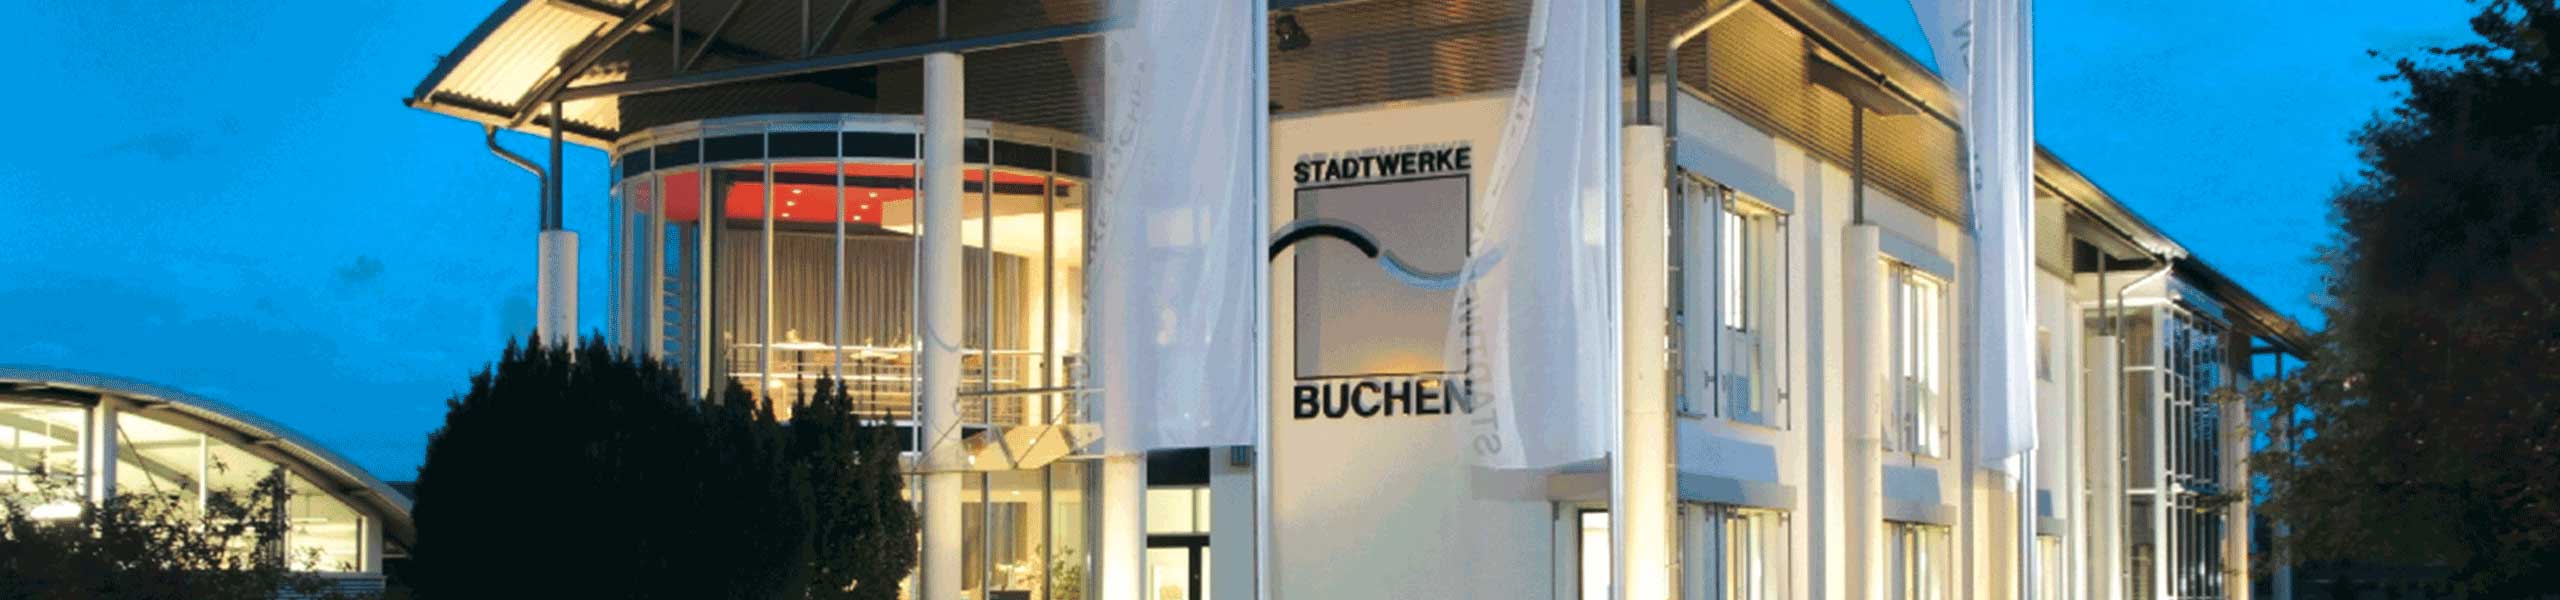 Stadtwerke Buchen GmbH & Co KG - Wasseranschluss